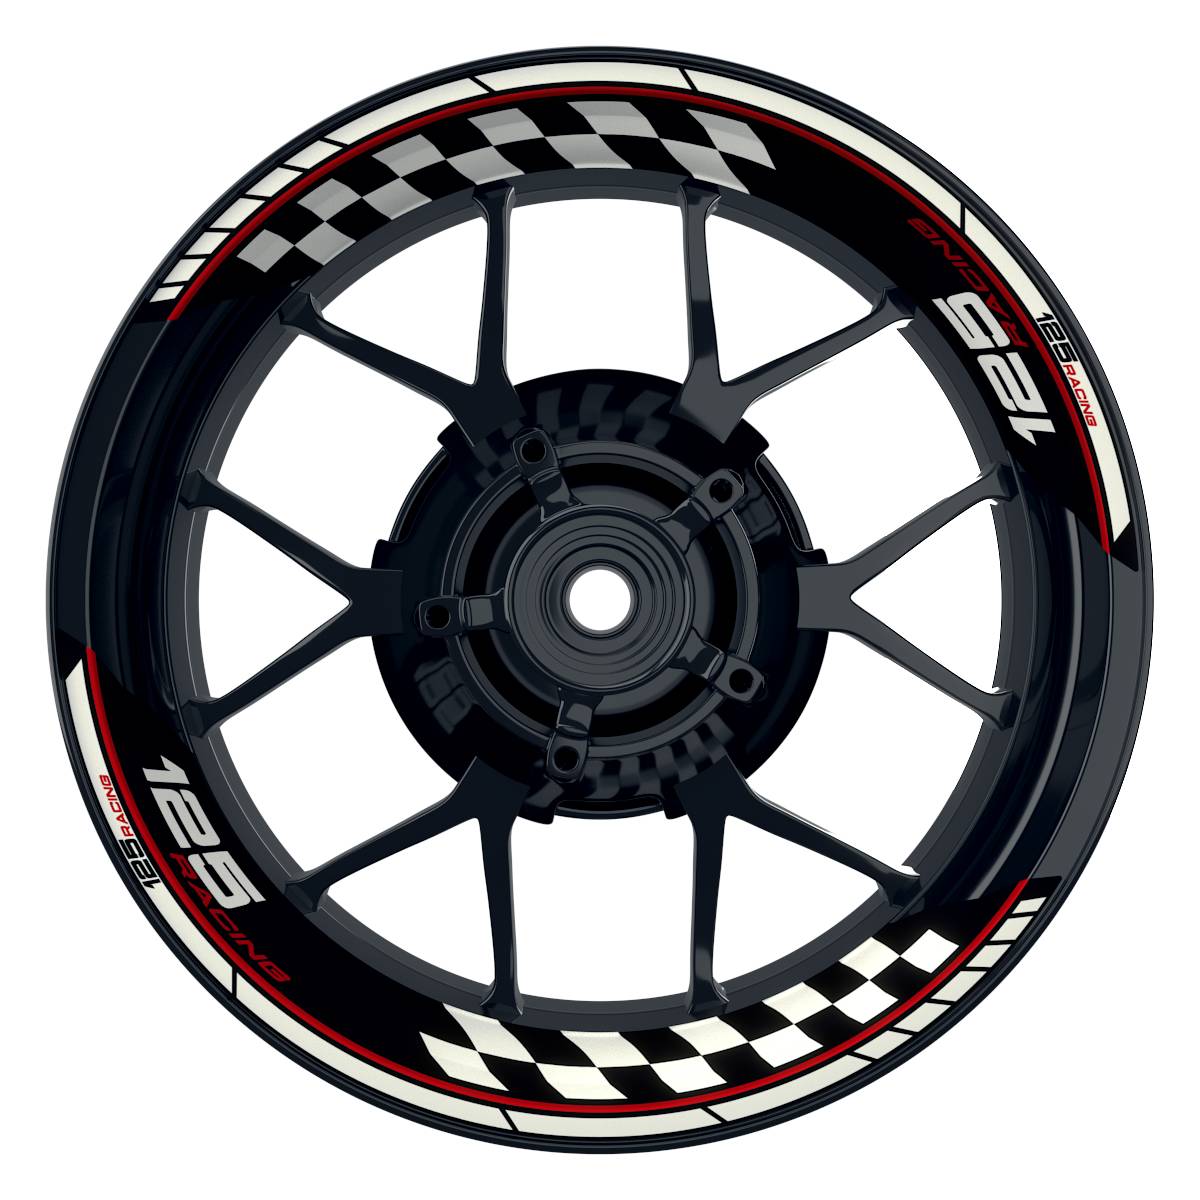 KTM Racing 125 Grid schwarz rot Frontansicht